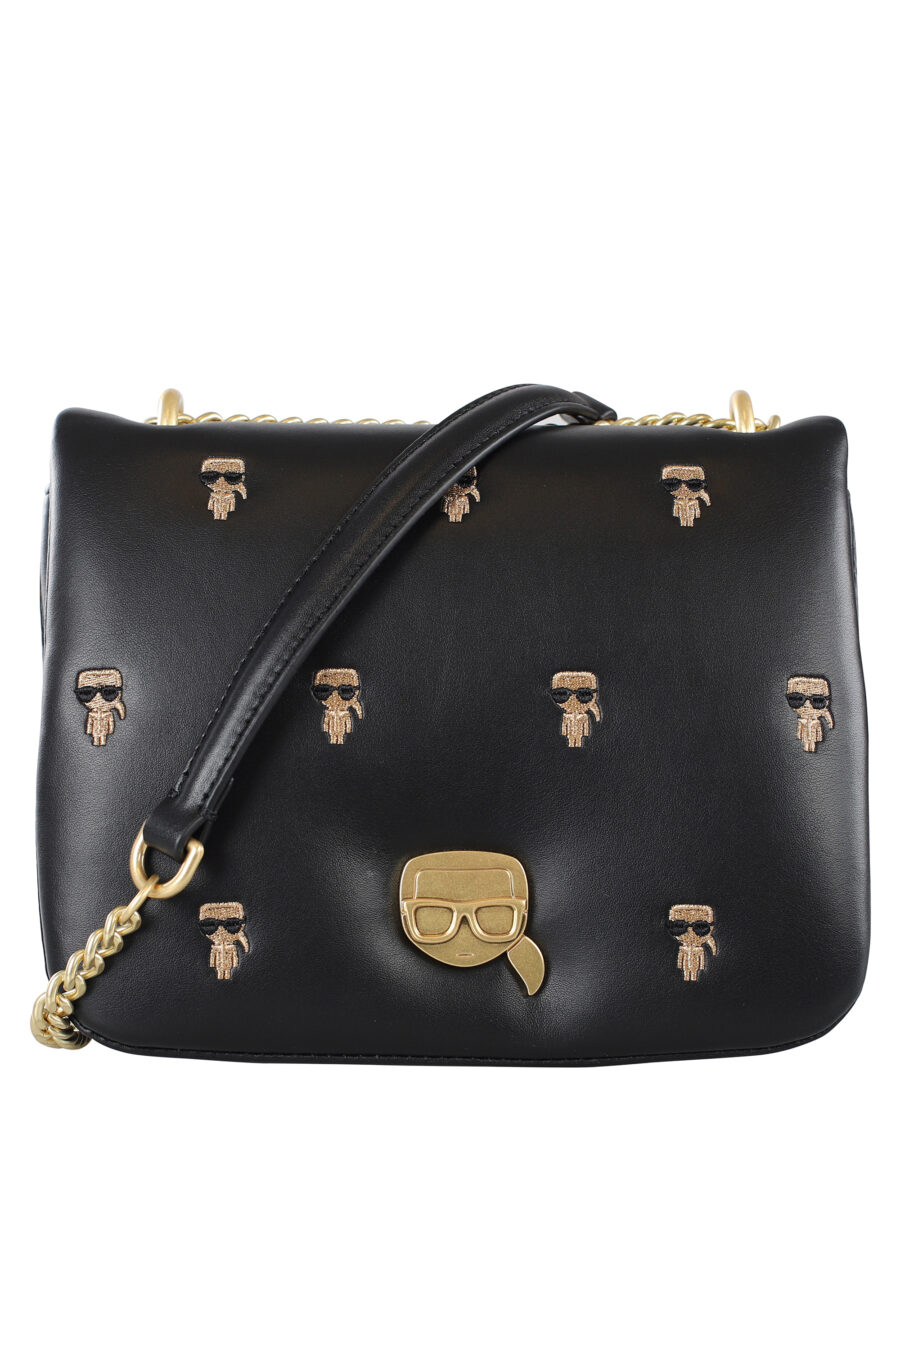 Mini sac à bandoulière noir "all over logo" en clous et chaîne dorée - IMG 6960